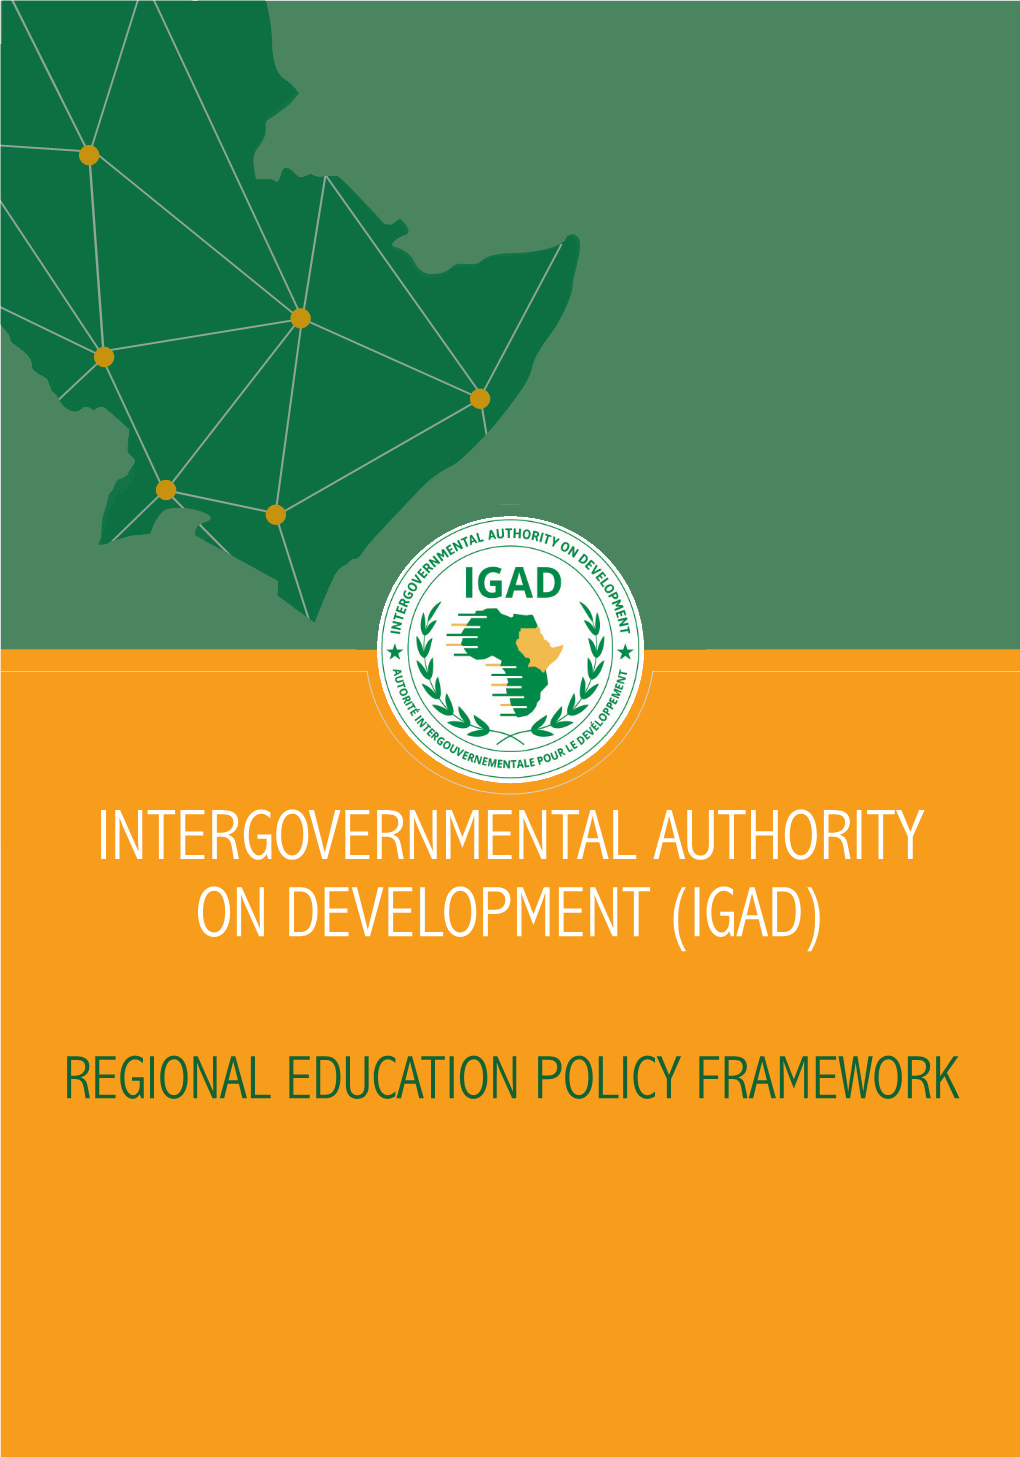 Regional Education Policy Framework